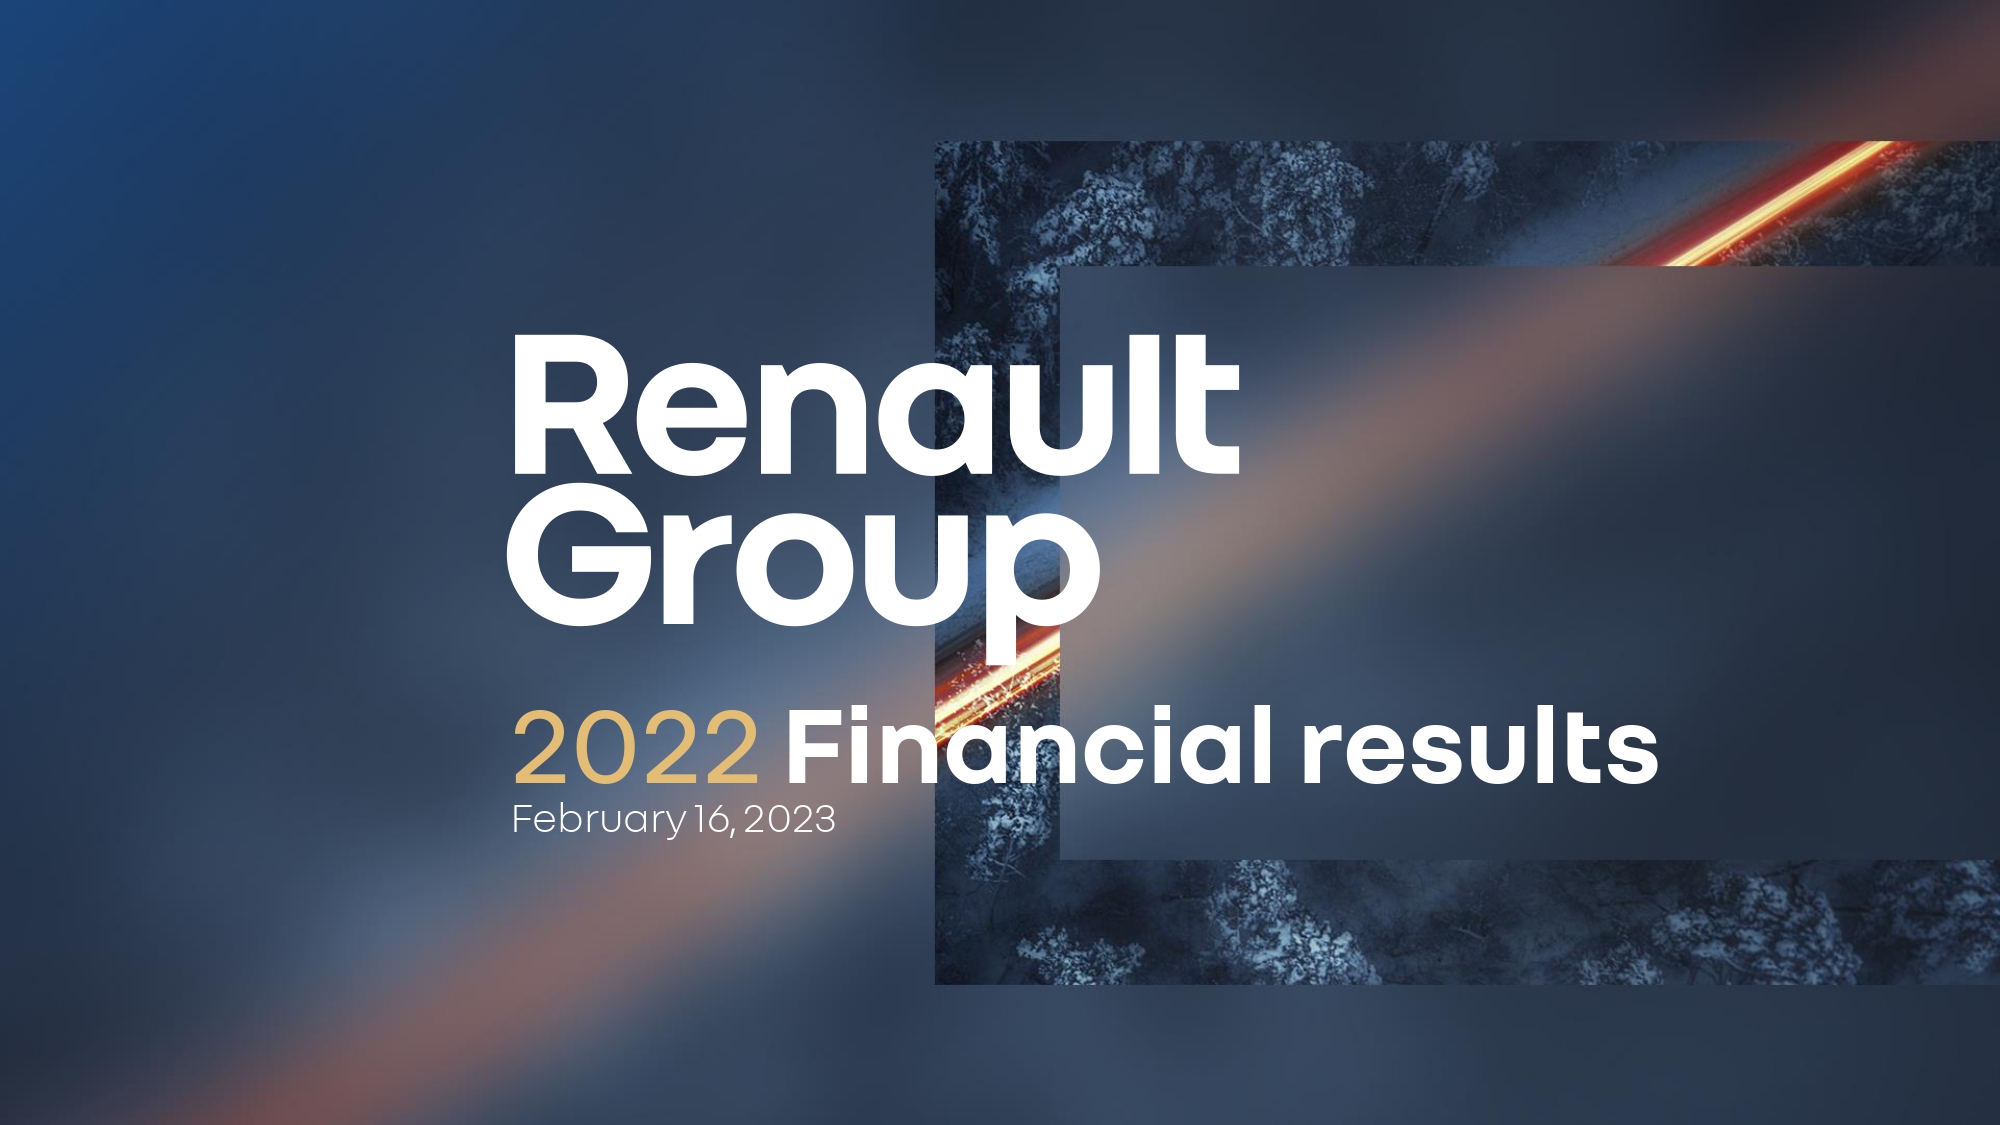 Renault Group lo logra: rentabilidad duplicada, flujo de caja libre récord, dividendos reanudados y una mayor mejora del rendimiento esperado en 2023